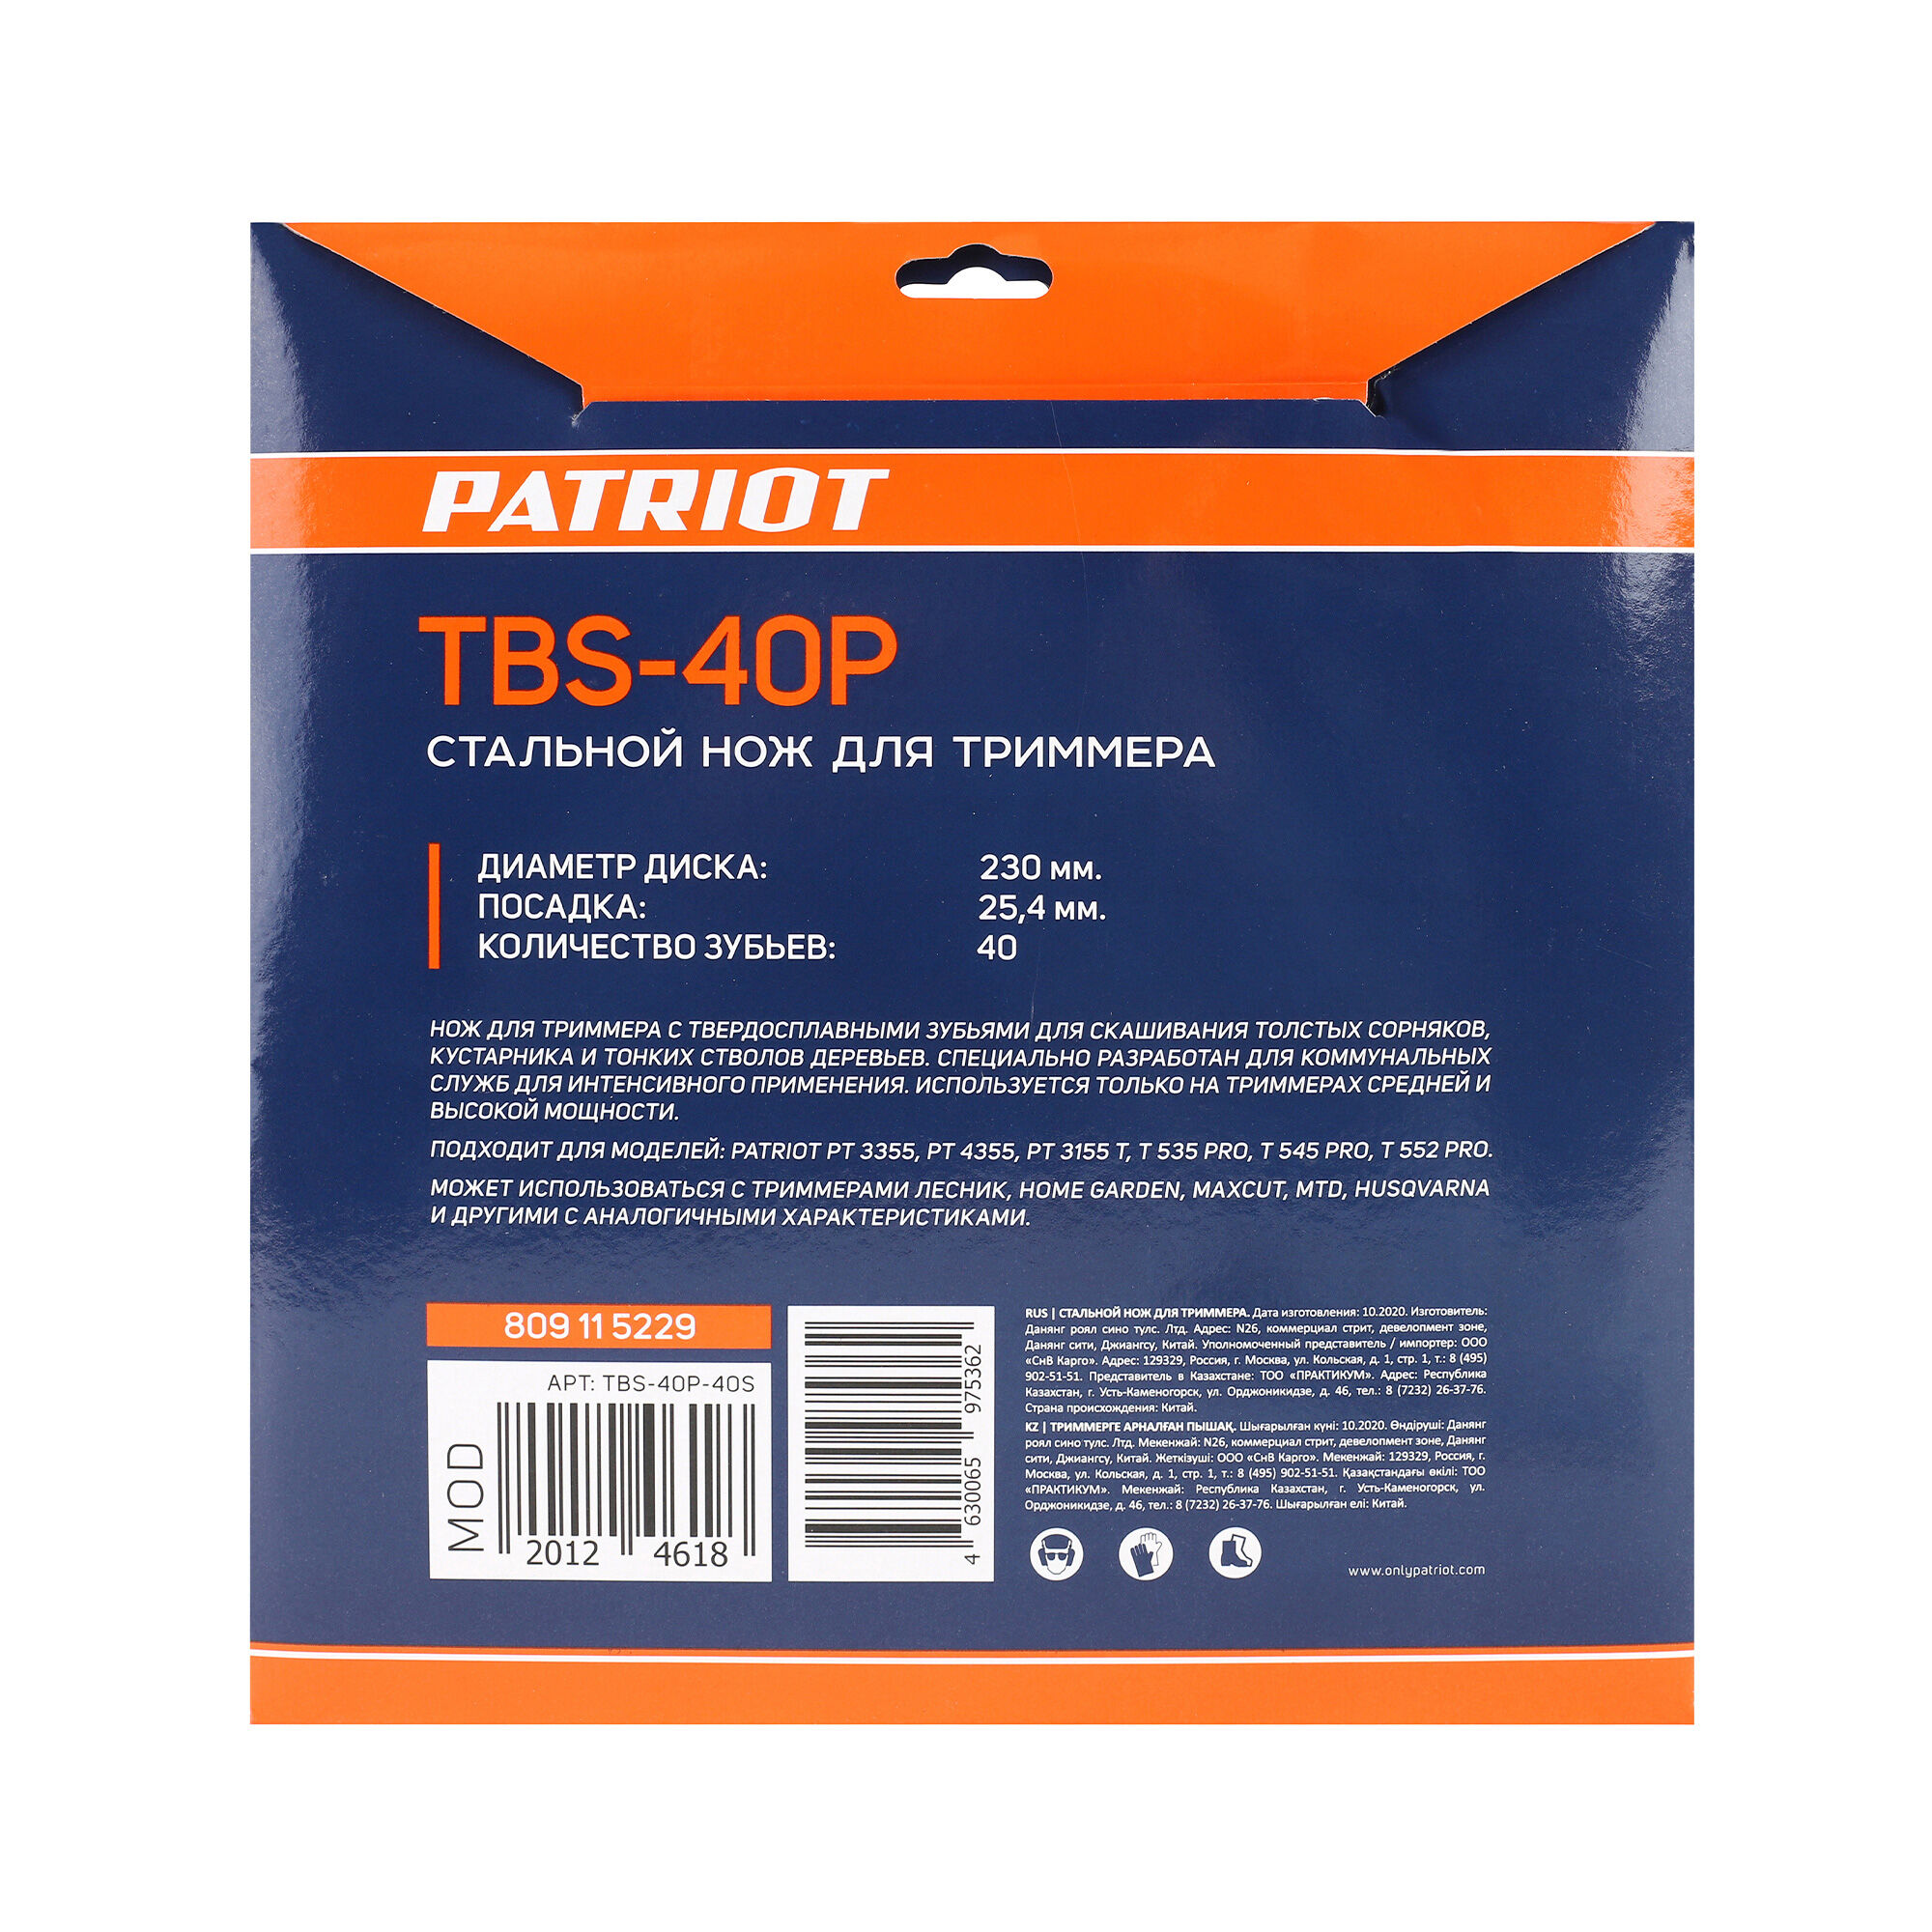 Нож PATRIOT TBS-40 P для триммера (230х25.4 мм, 40 зубьев) 5